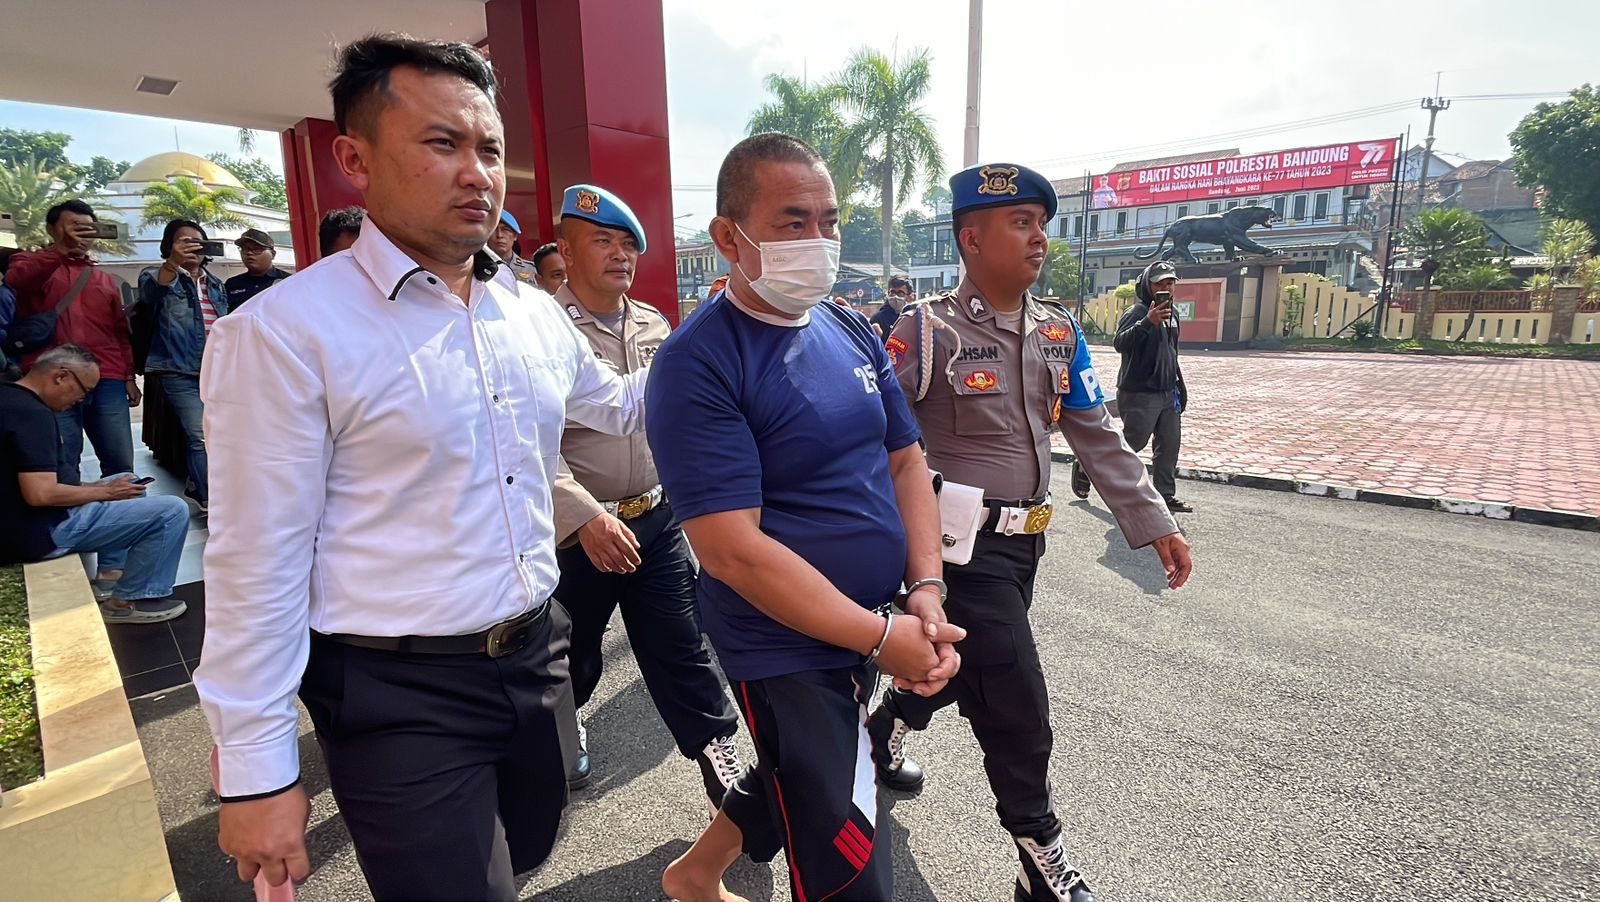 4 Kali Melakukan Aksi, Pelaku TPPO di Kabupaten Bandung Terancam Hukuman 15 Tahun dan Denda Rp15 Miliar